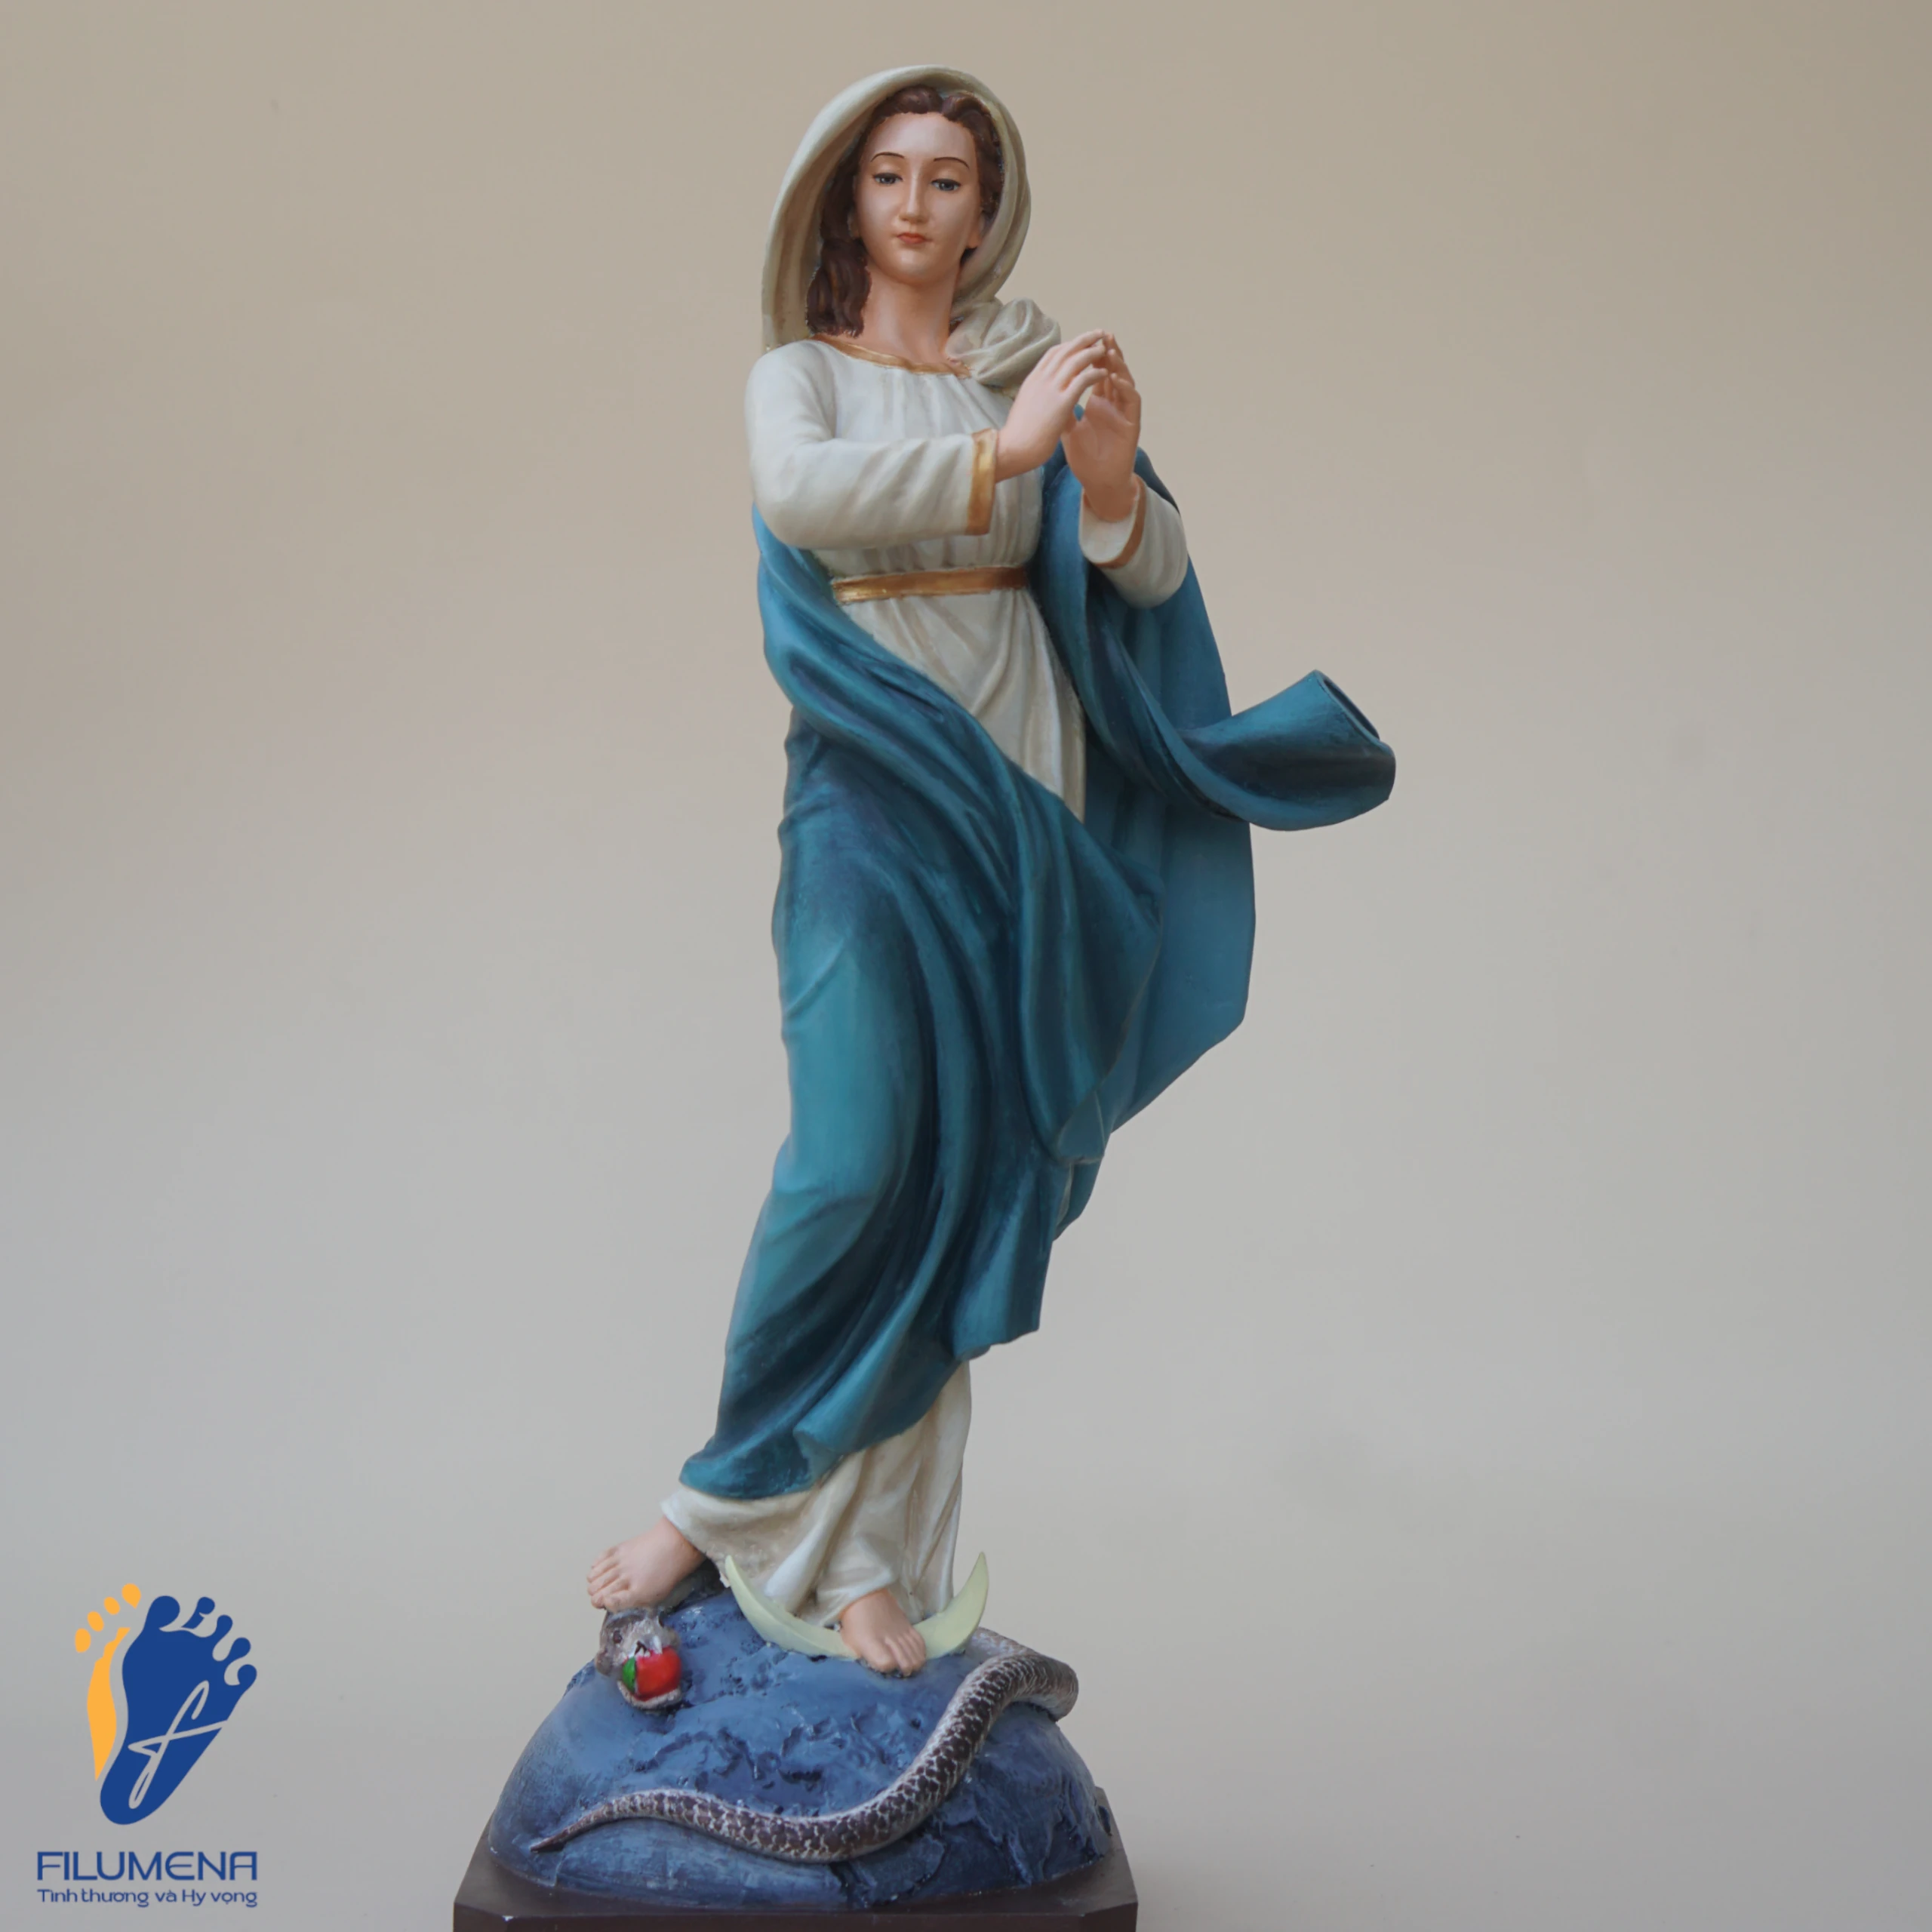 Tượng Đức Mẹ Vô Nhiễm Nguyên Tội màu xanh nước biển (sáng tác bởi Filumena)